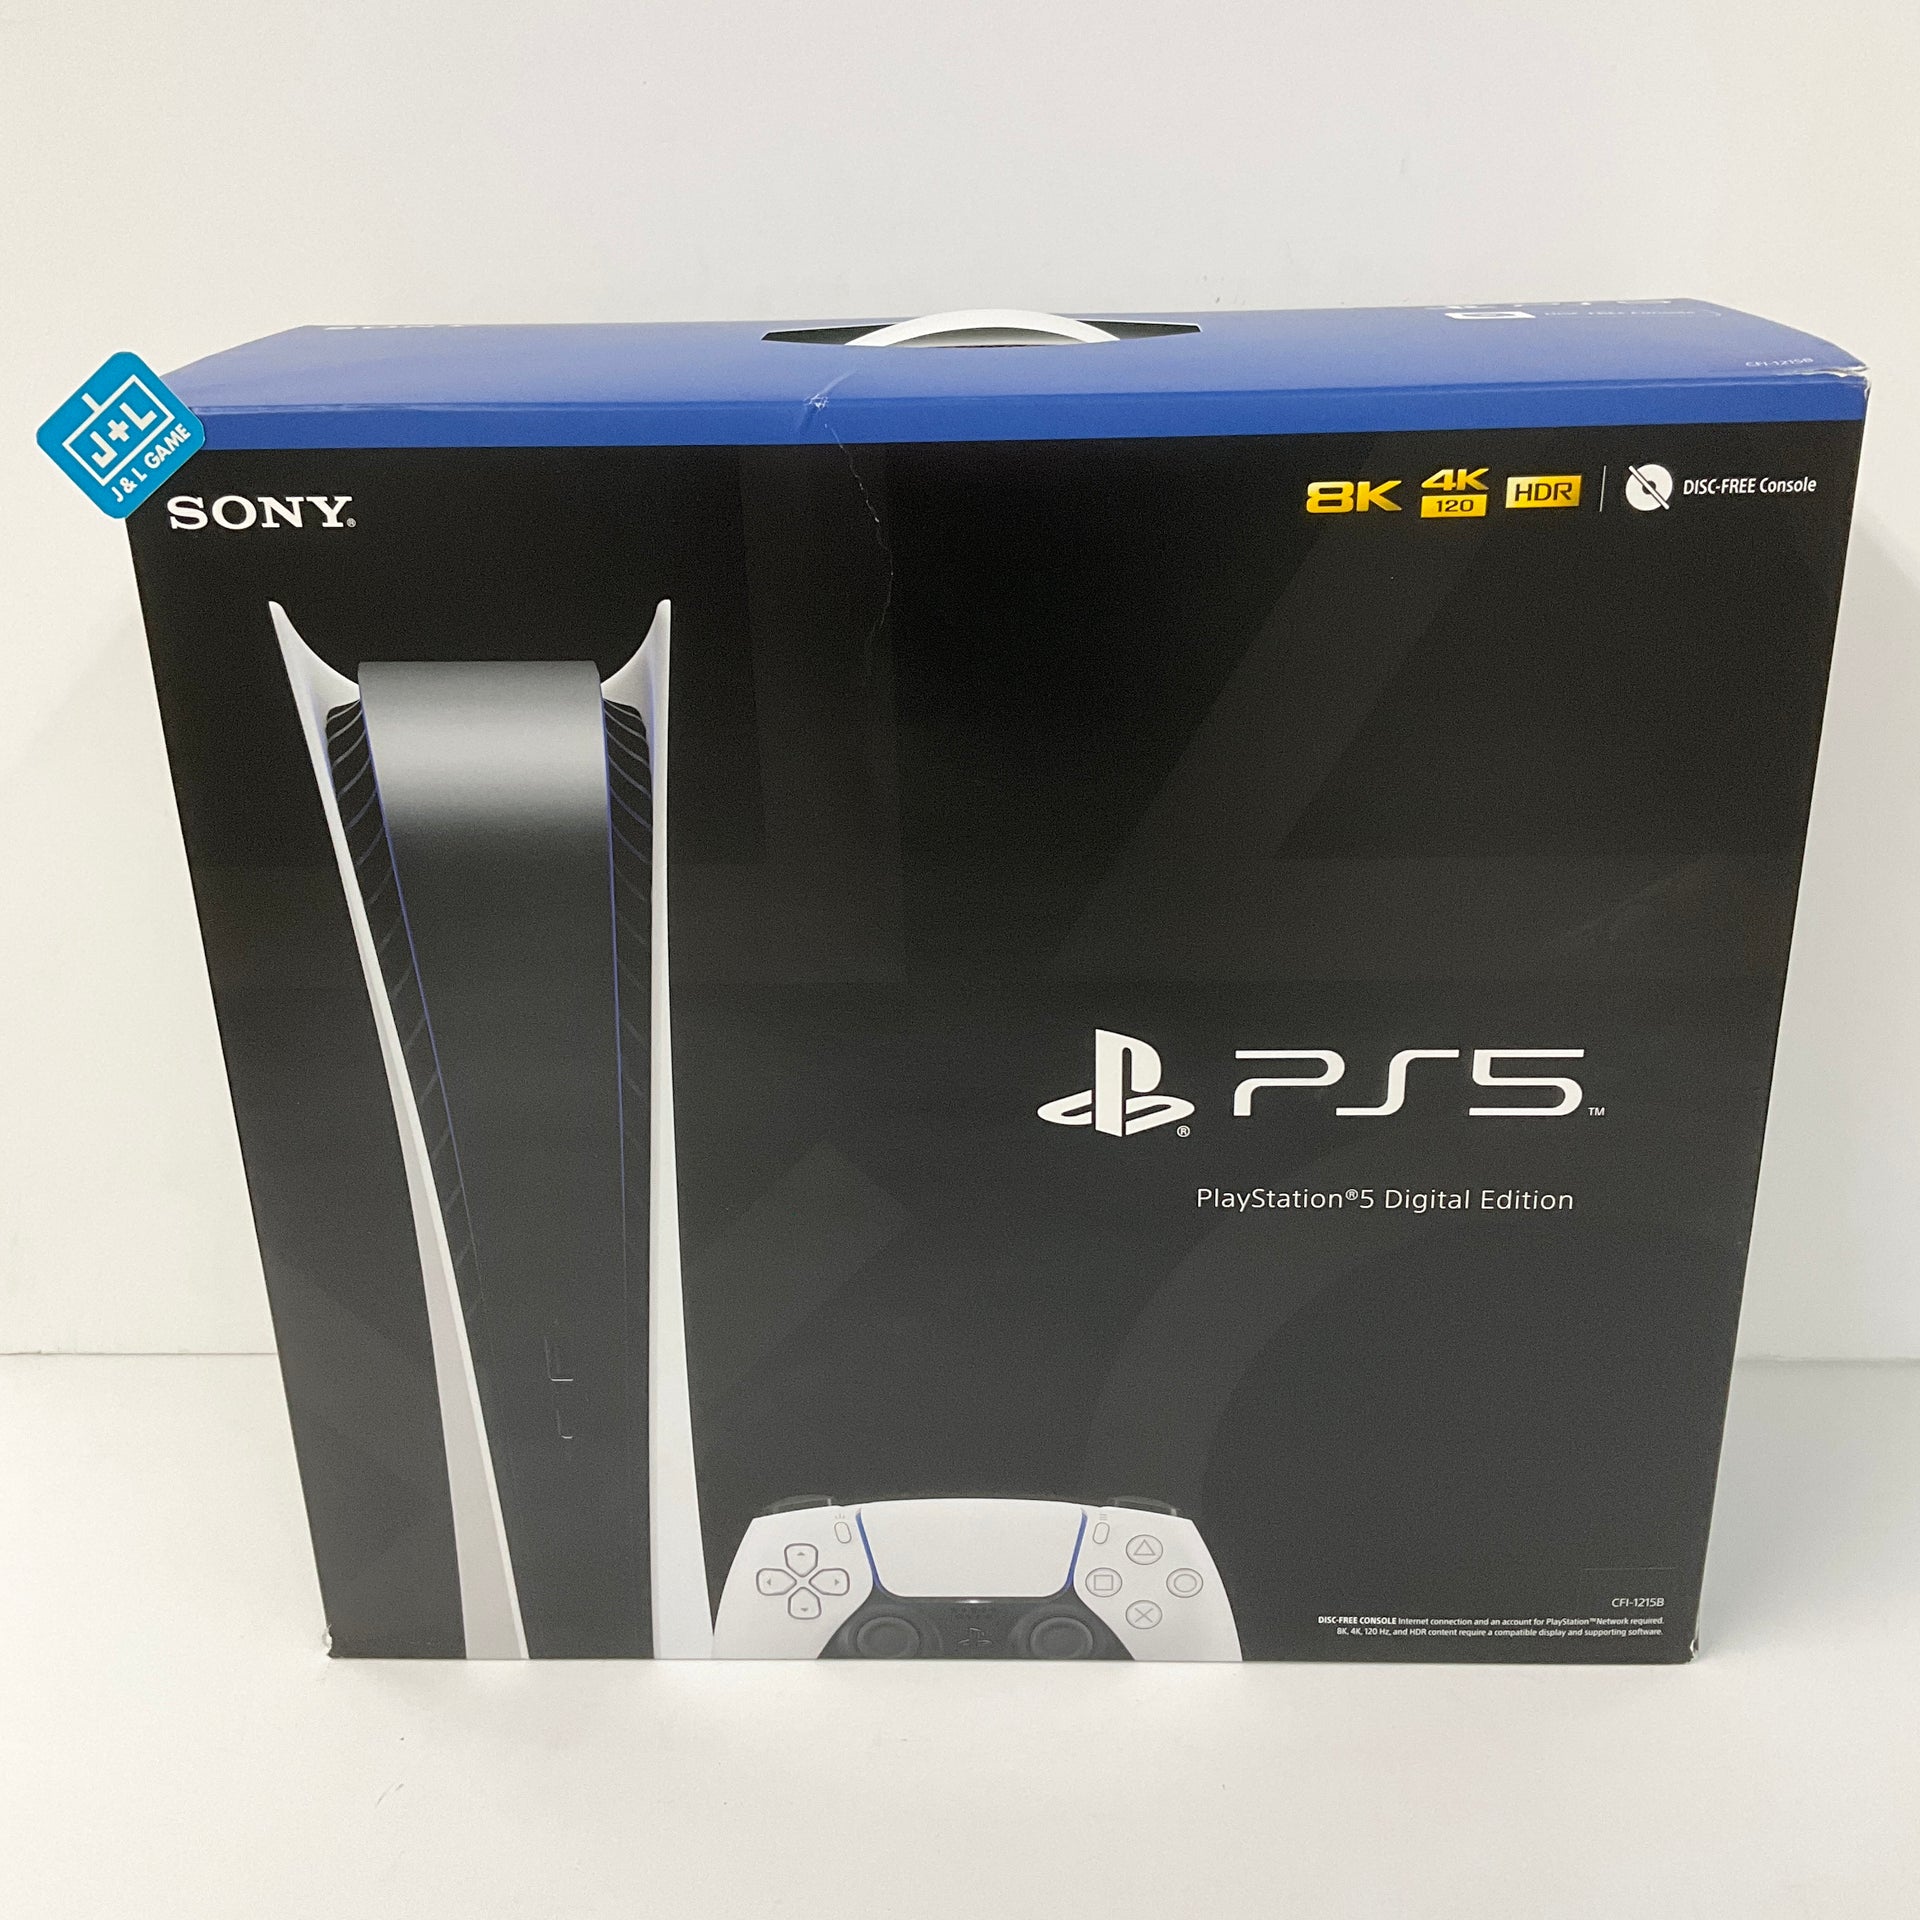  Consola de juegos PS5 Playstation 5 Digital Edition